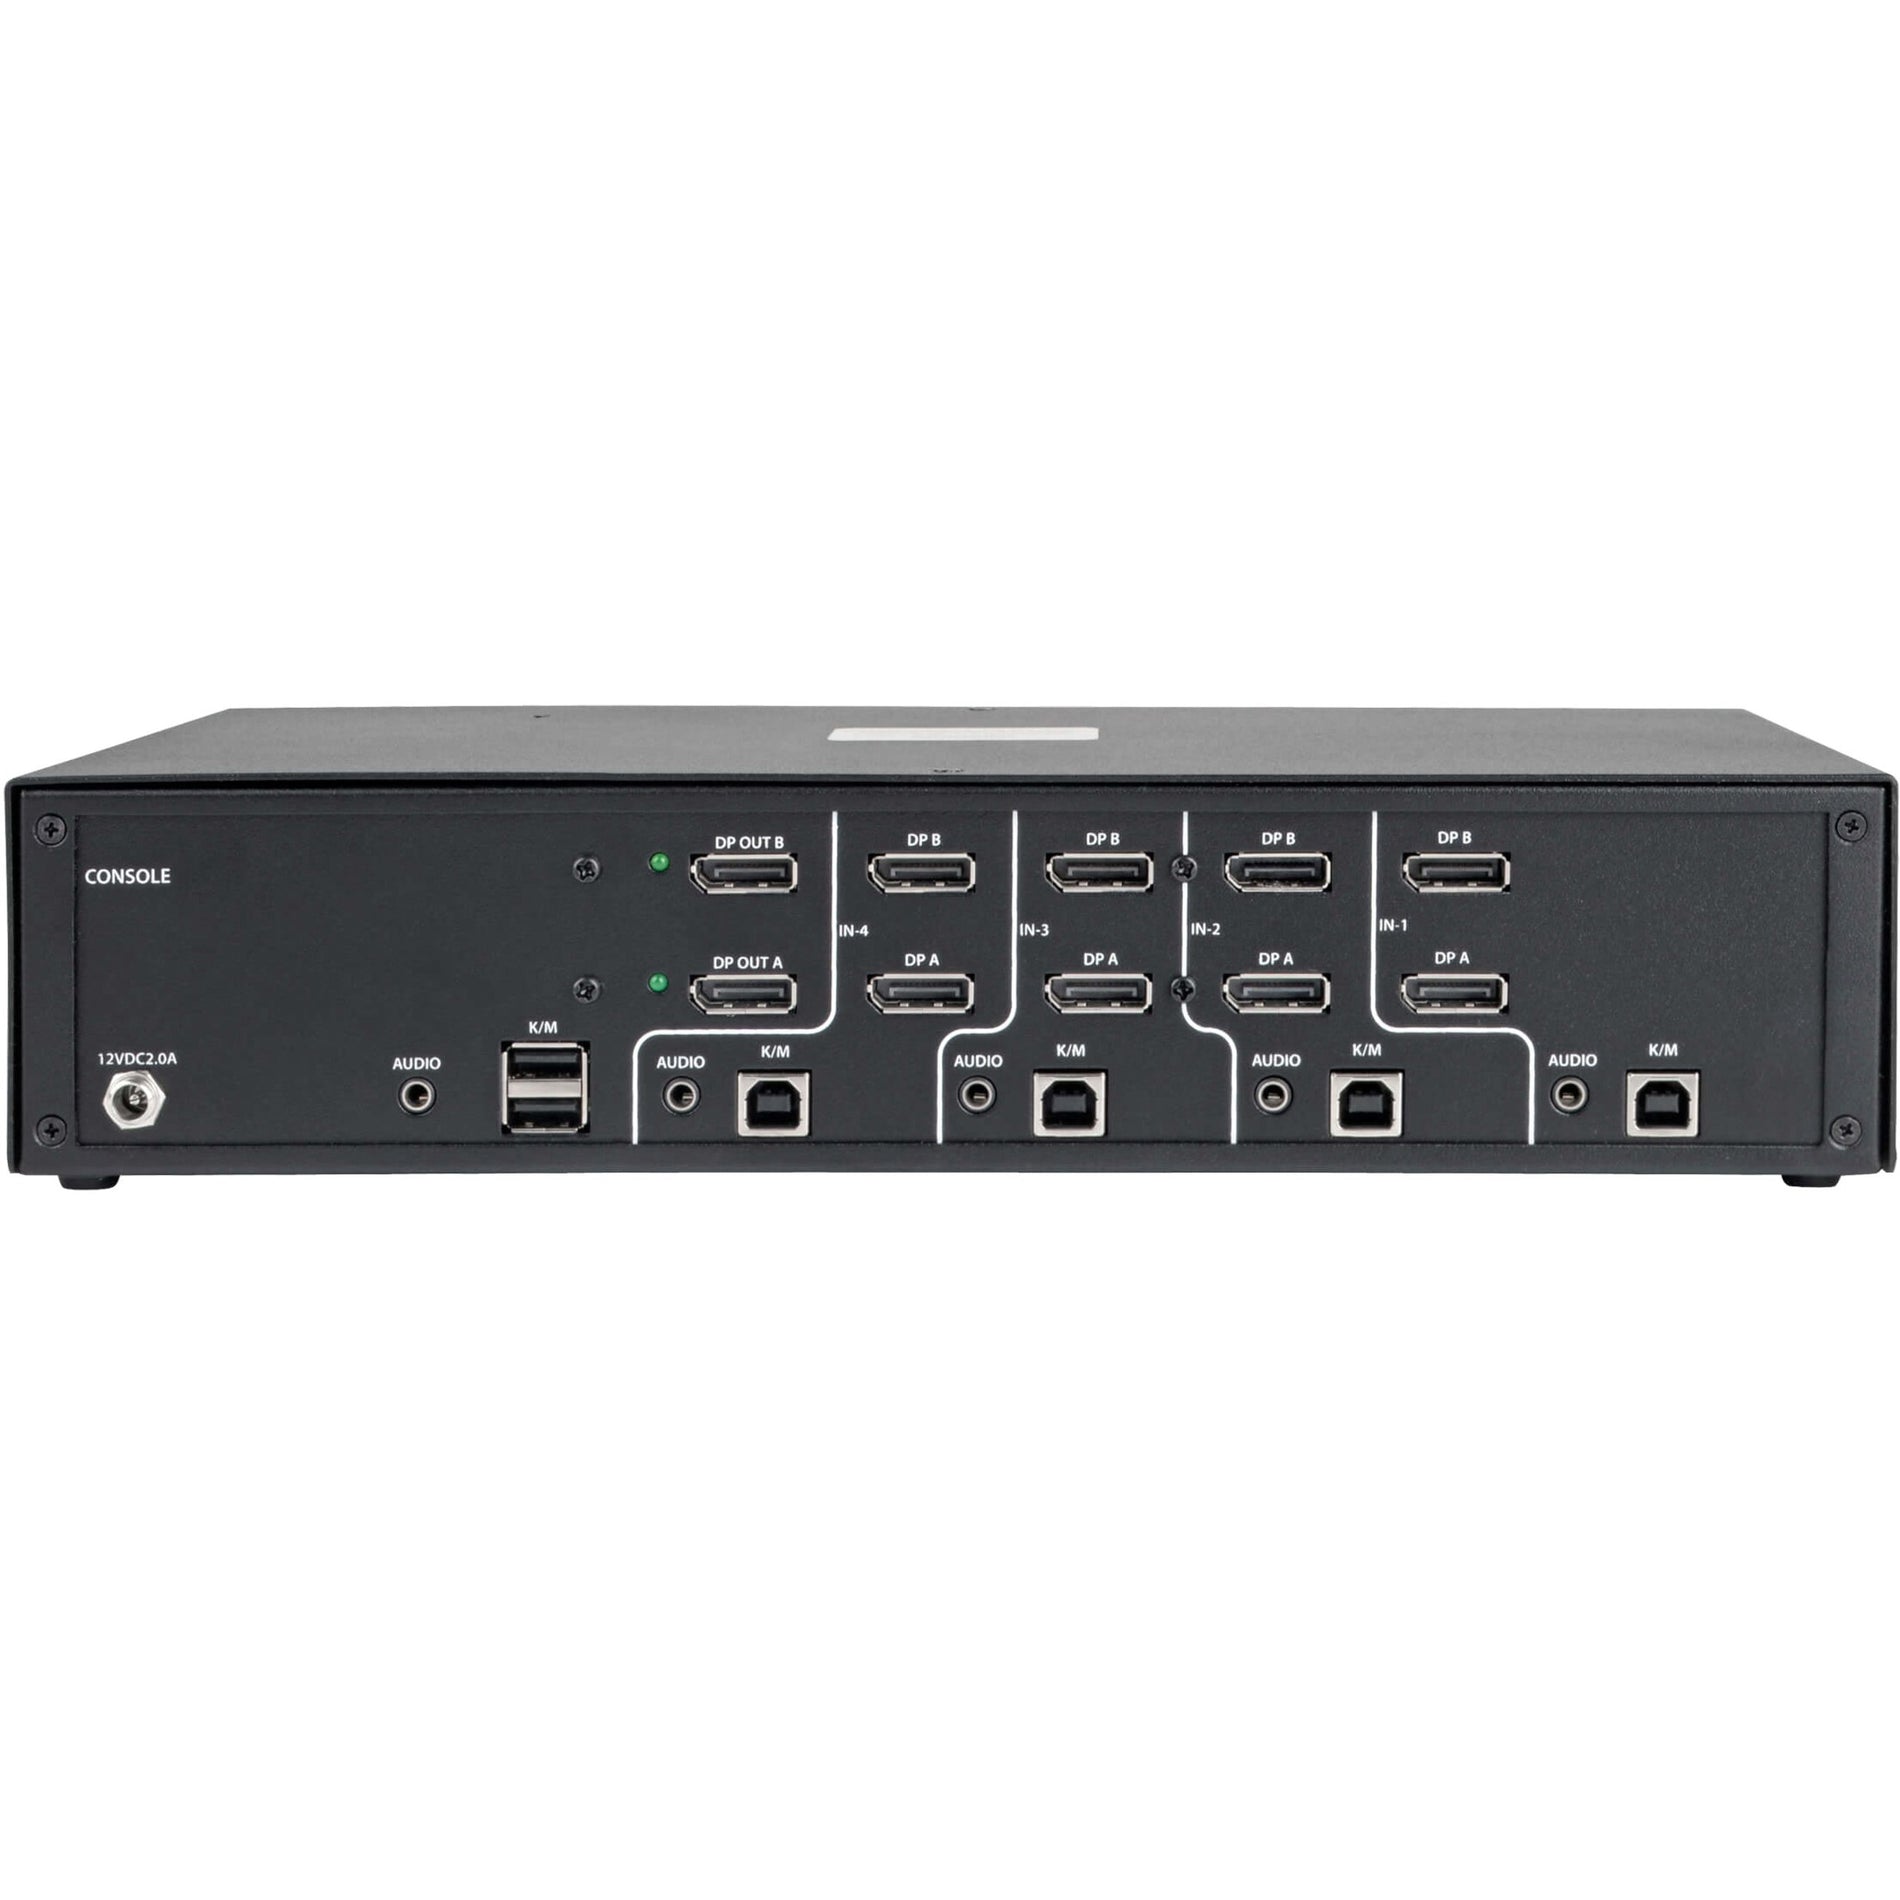 Tripp Lite B002-DP2A4 Secure 4-Port NIAP PP3.0-Certified DisplayPort KVM Switch, 3840 x 2160, 3 Year Warranty, TAA Compliant